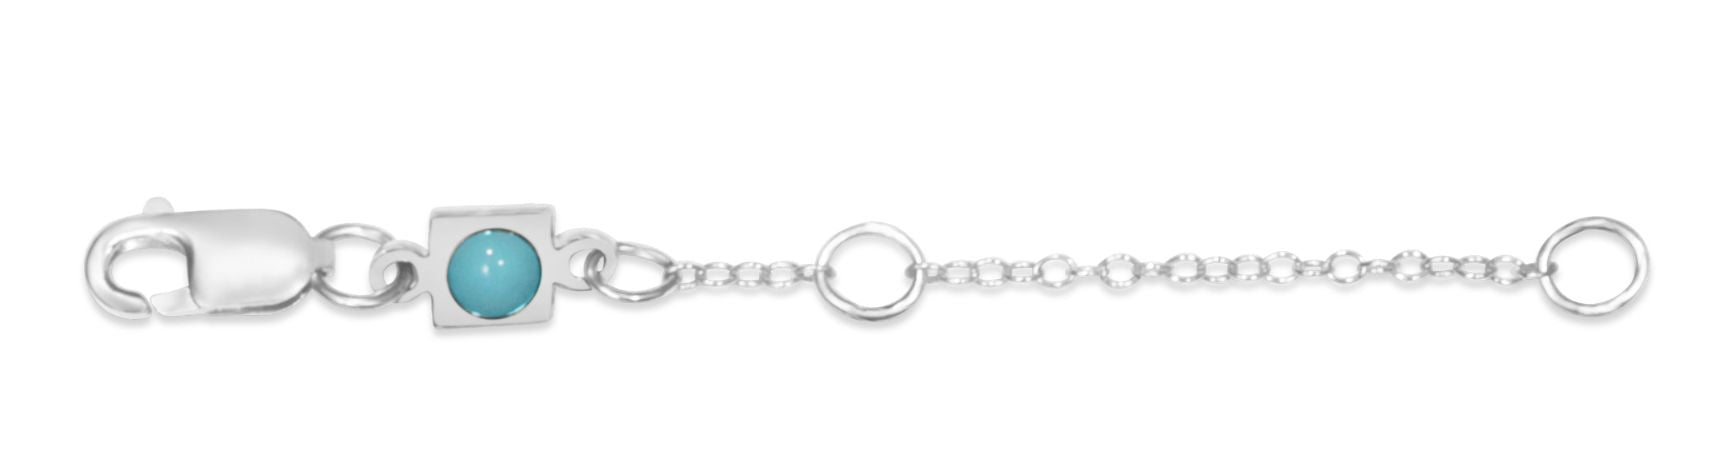 ELLE Jewelry - NECKLACE EXTENDERS 2 in. Sterling Silver Enhancer Chain  (Z0002) - BillyTheTree Jewelry